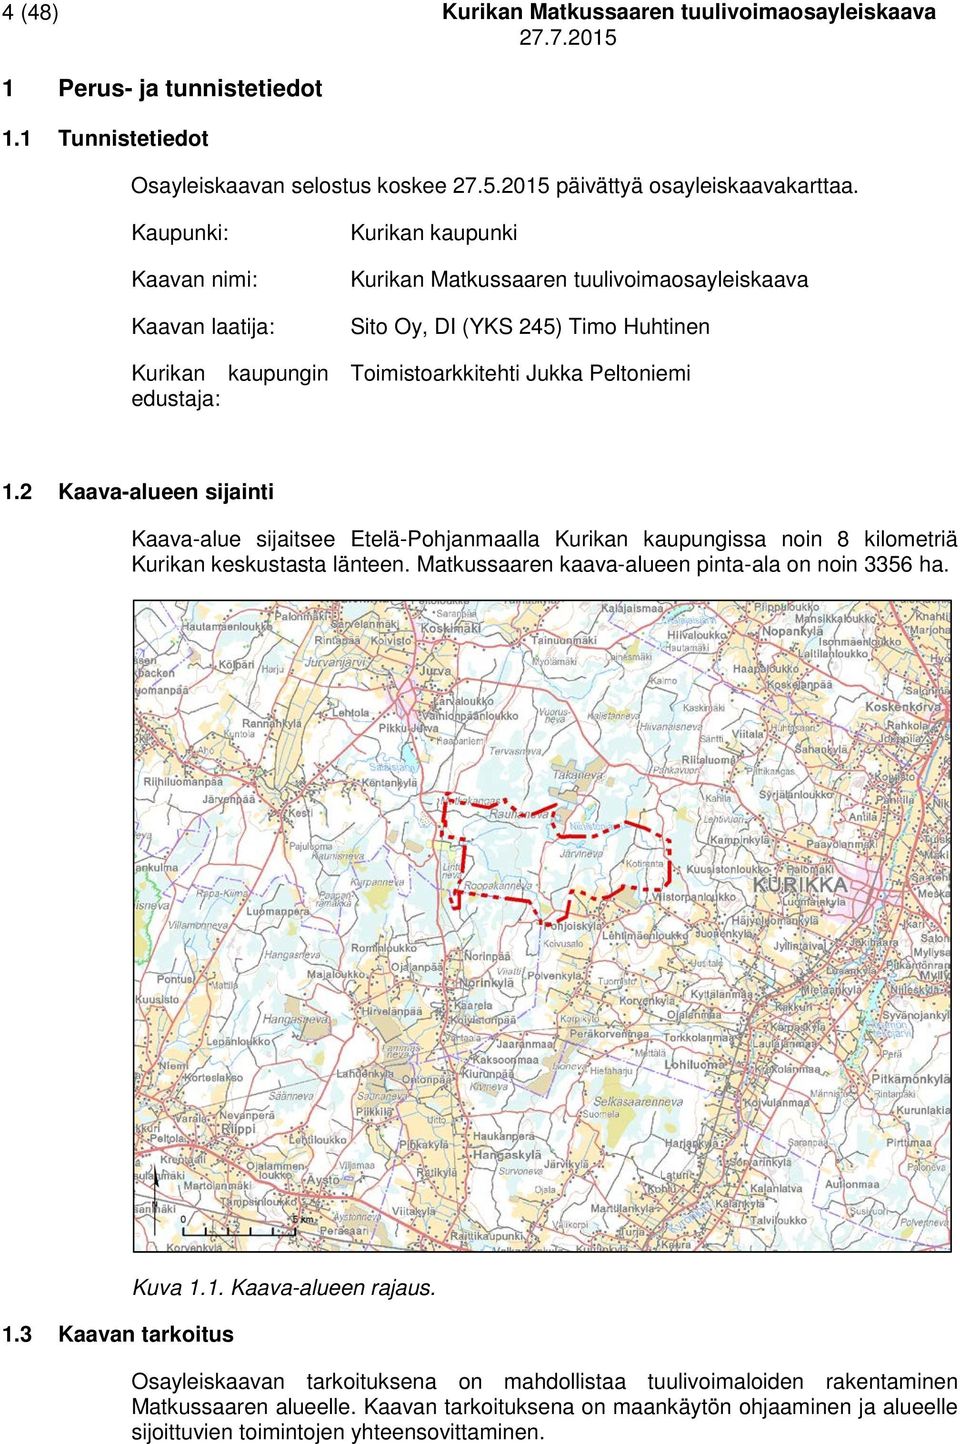 Peltoniemi 1.2 Kaava-alueen sijainti Kaava-alue sijaitsee Etelä-Pohjanmaalla Kurikan kaupungissa noin 8 kilometriä Kurikan keskustasta länteen. Matkussaaren kaava-alueen pinta-ala on noin 3356 ha. 1.3 Kaavan tarkoitus Kuva 1.